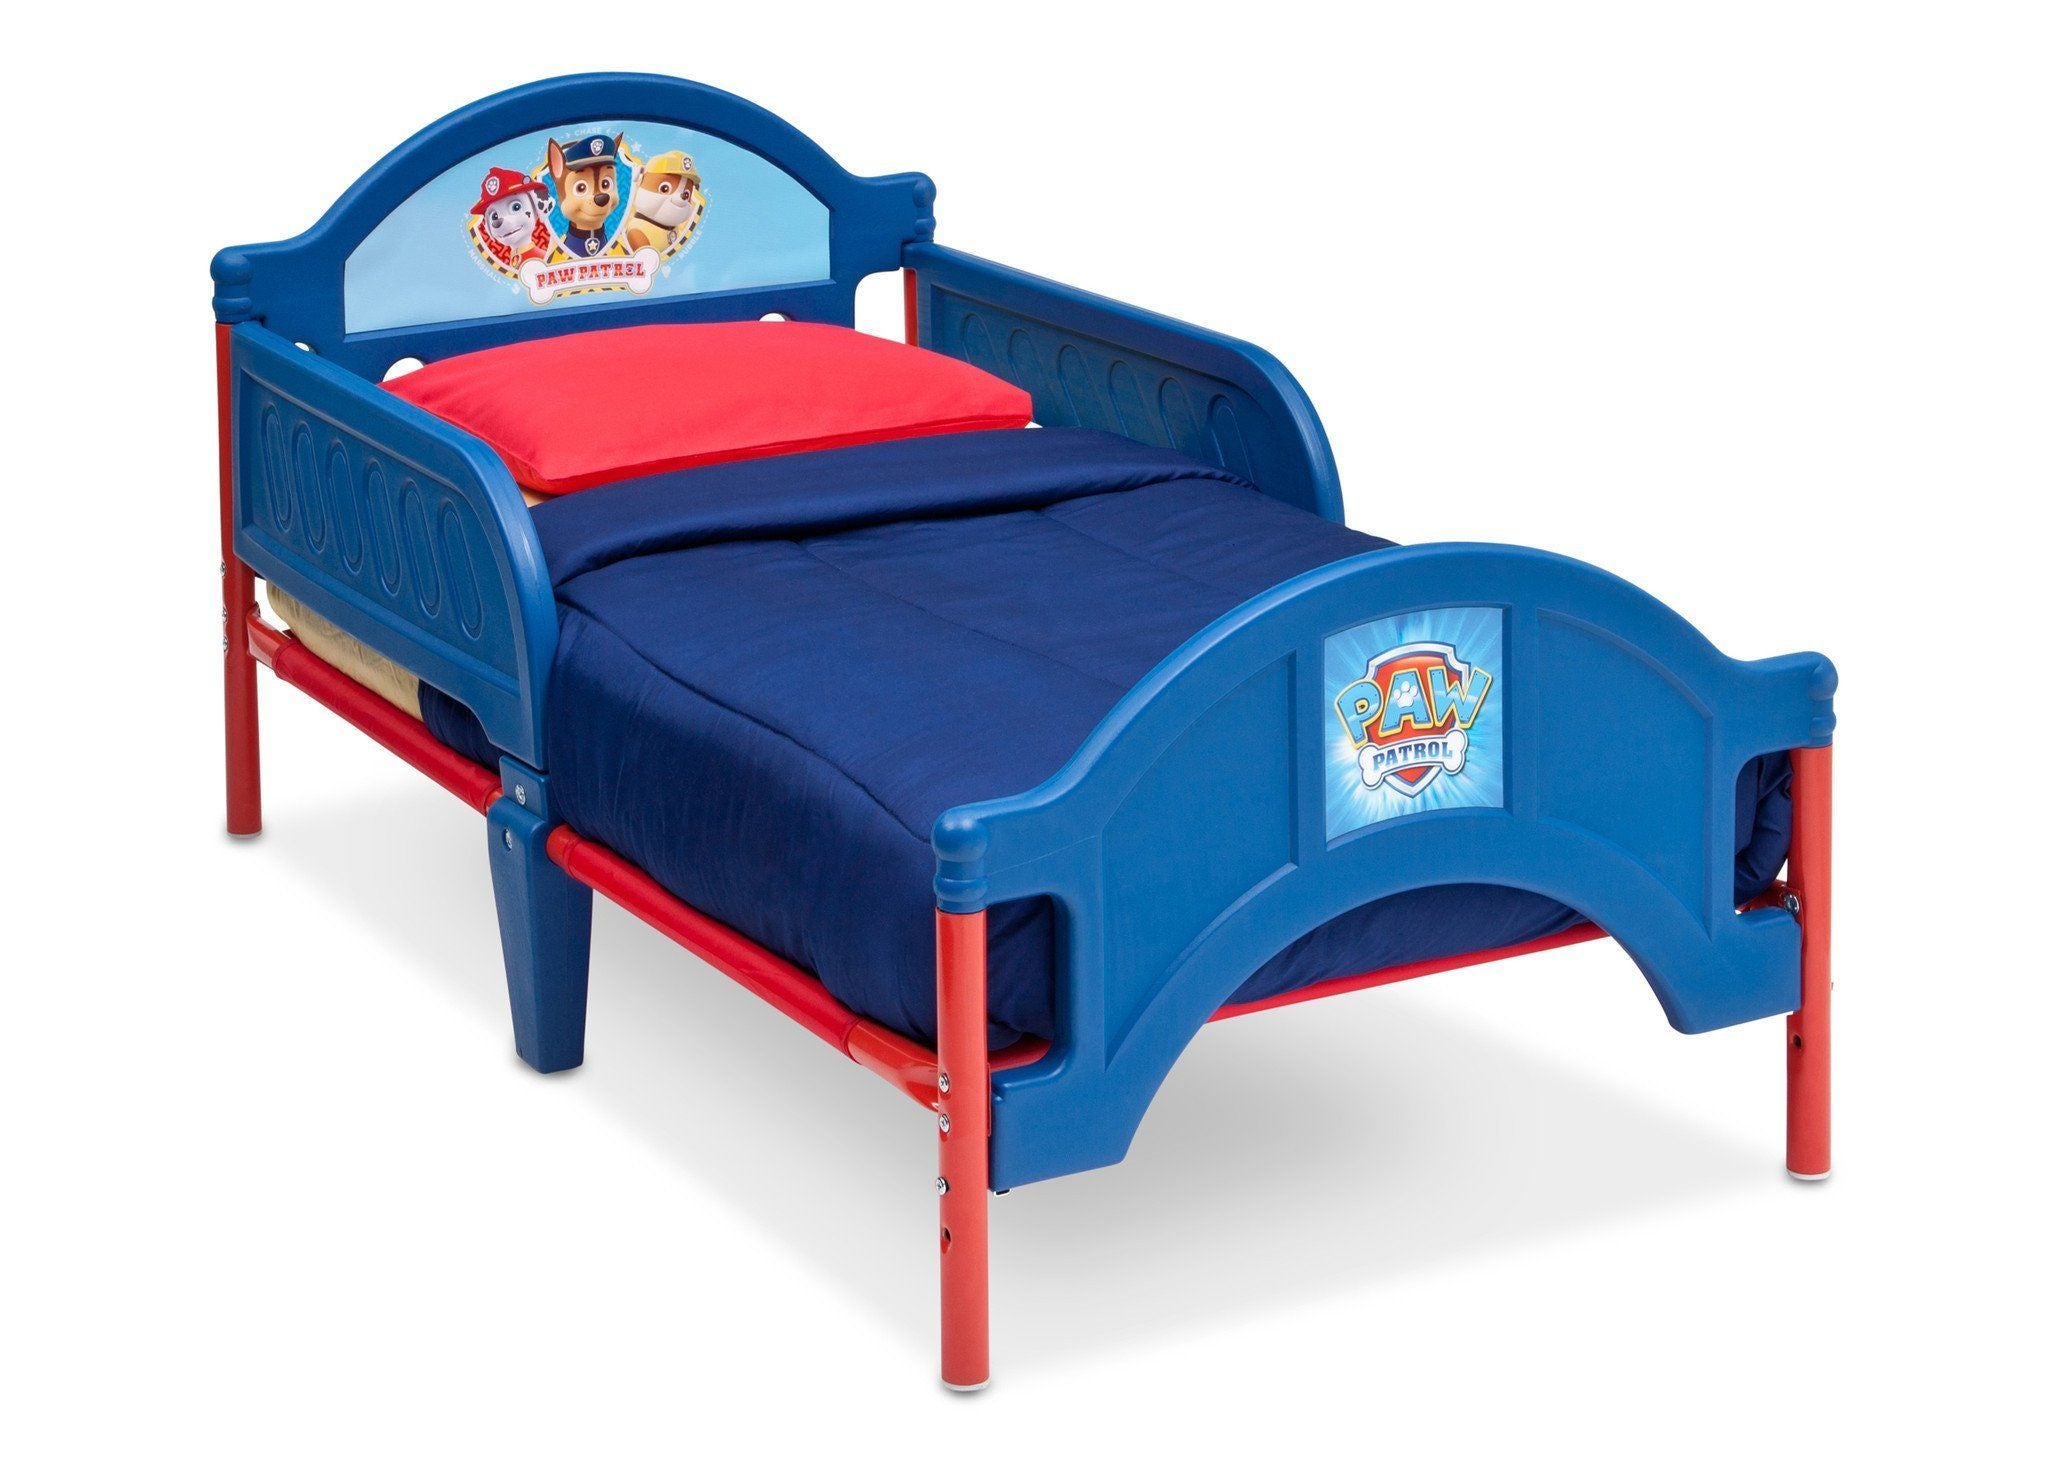 PAW Patrol Toddler Bed - Delta Children